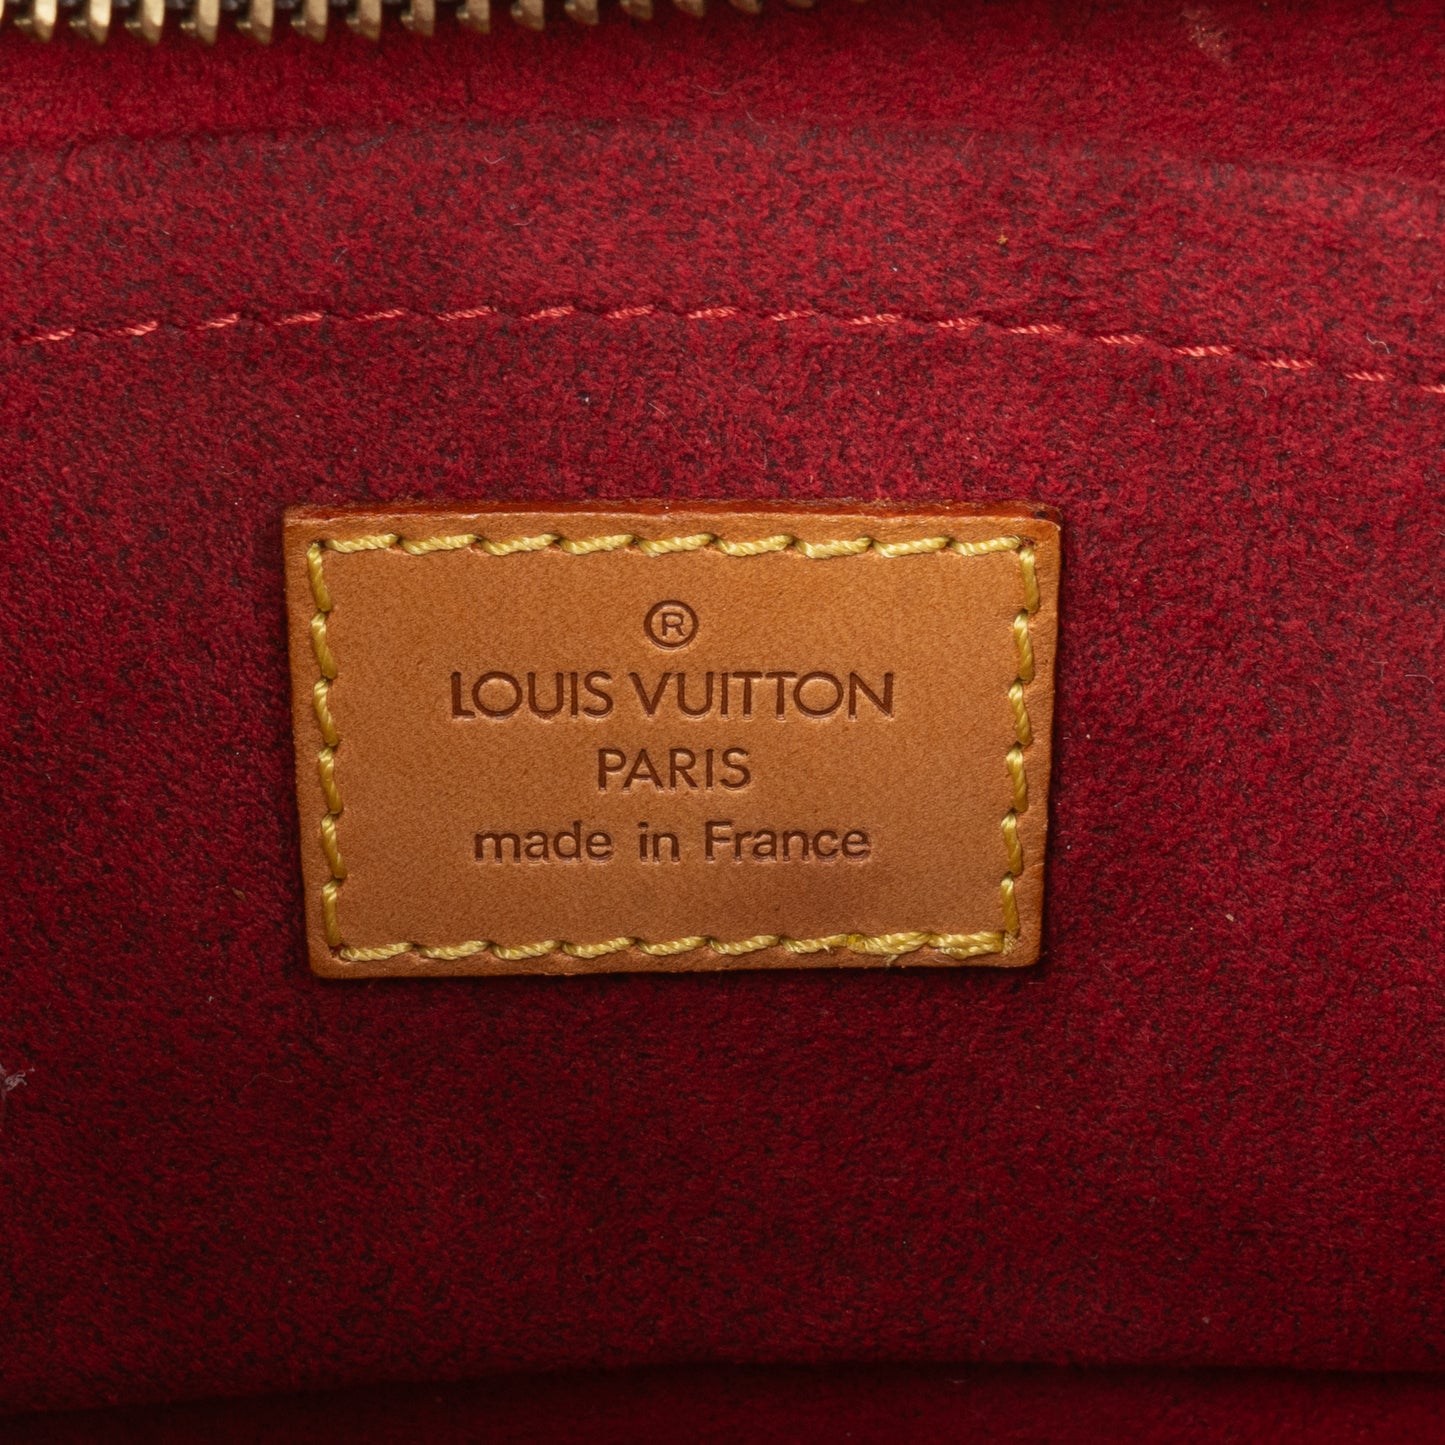 Louis Vuitton Canvas Monogram Croissant PM Handbag